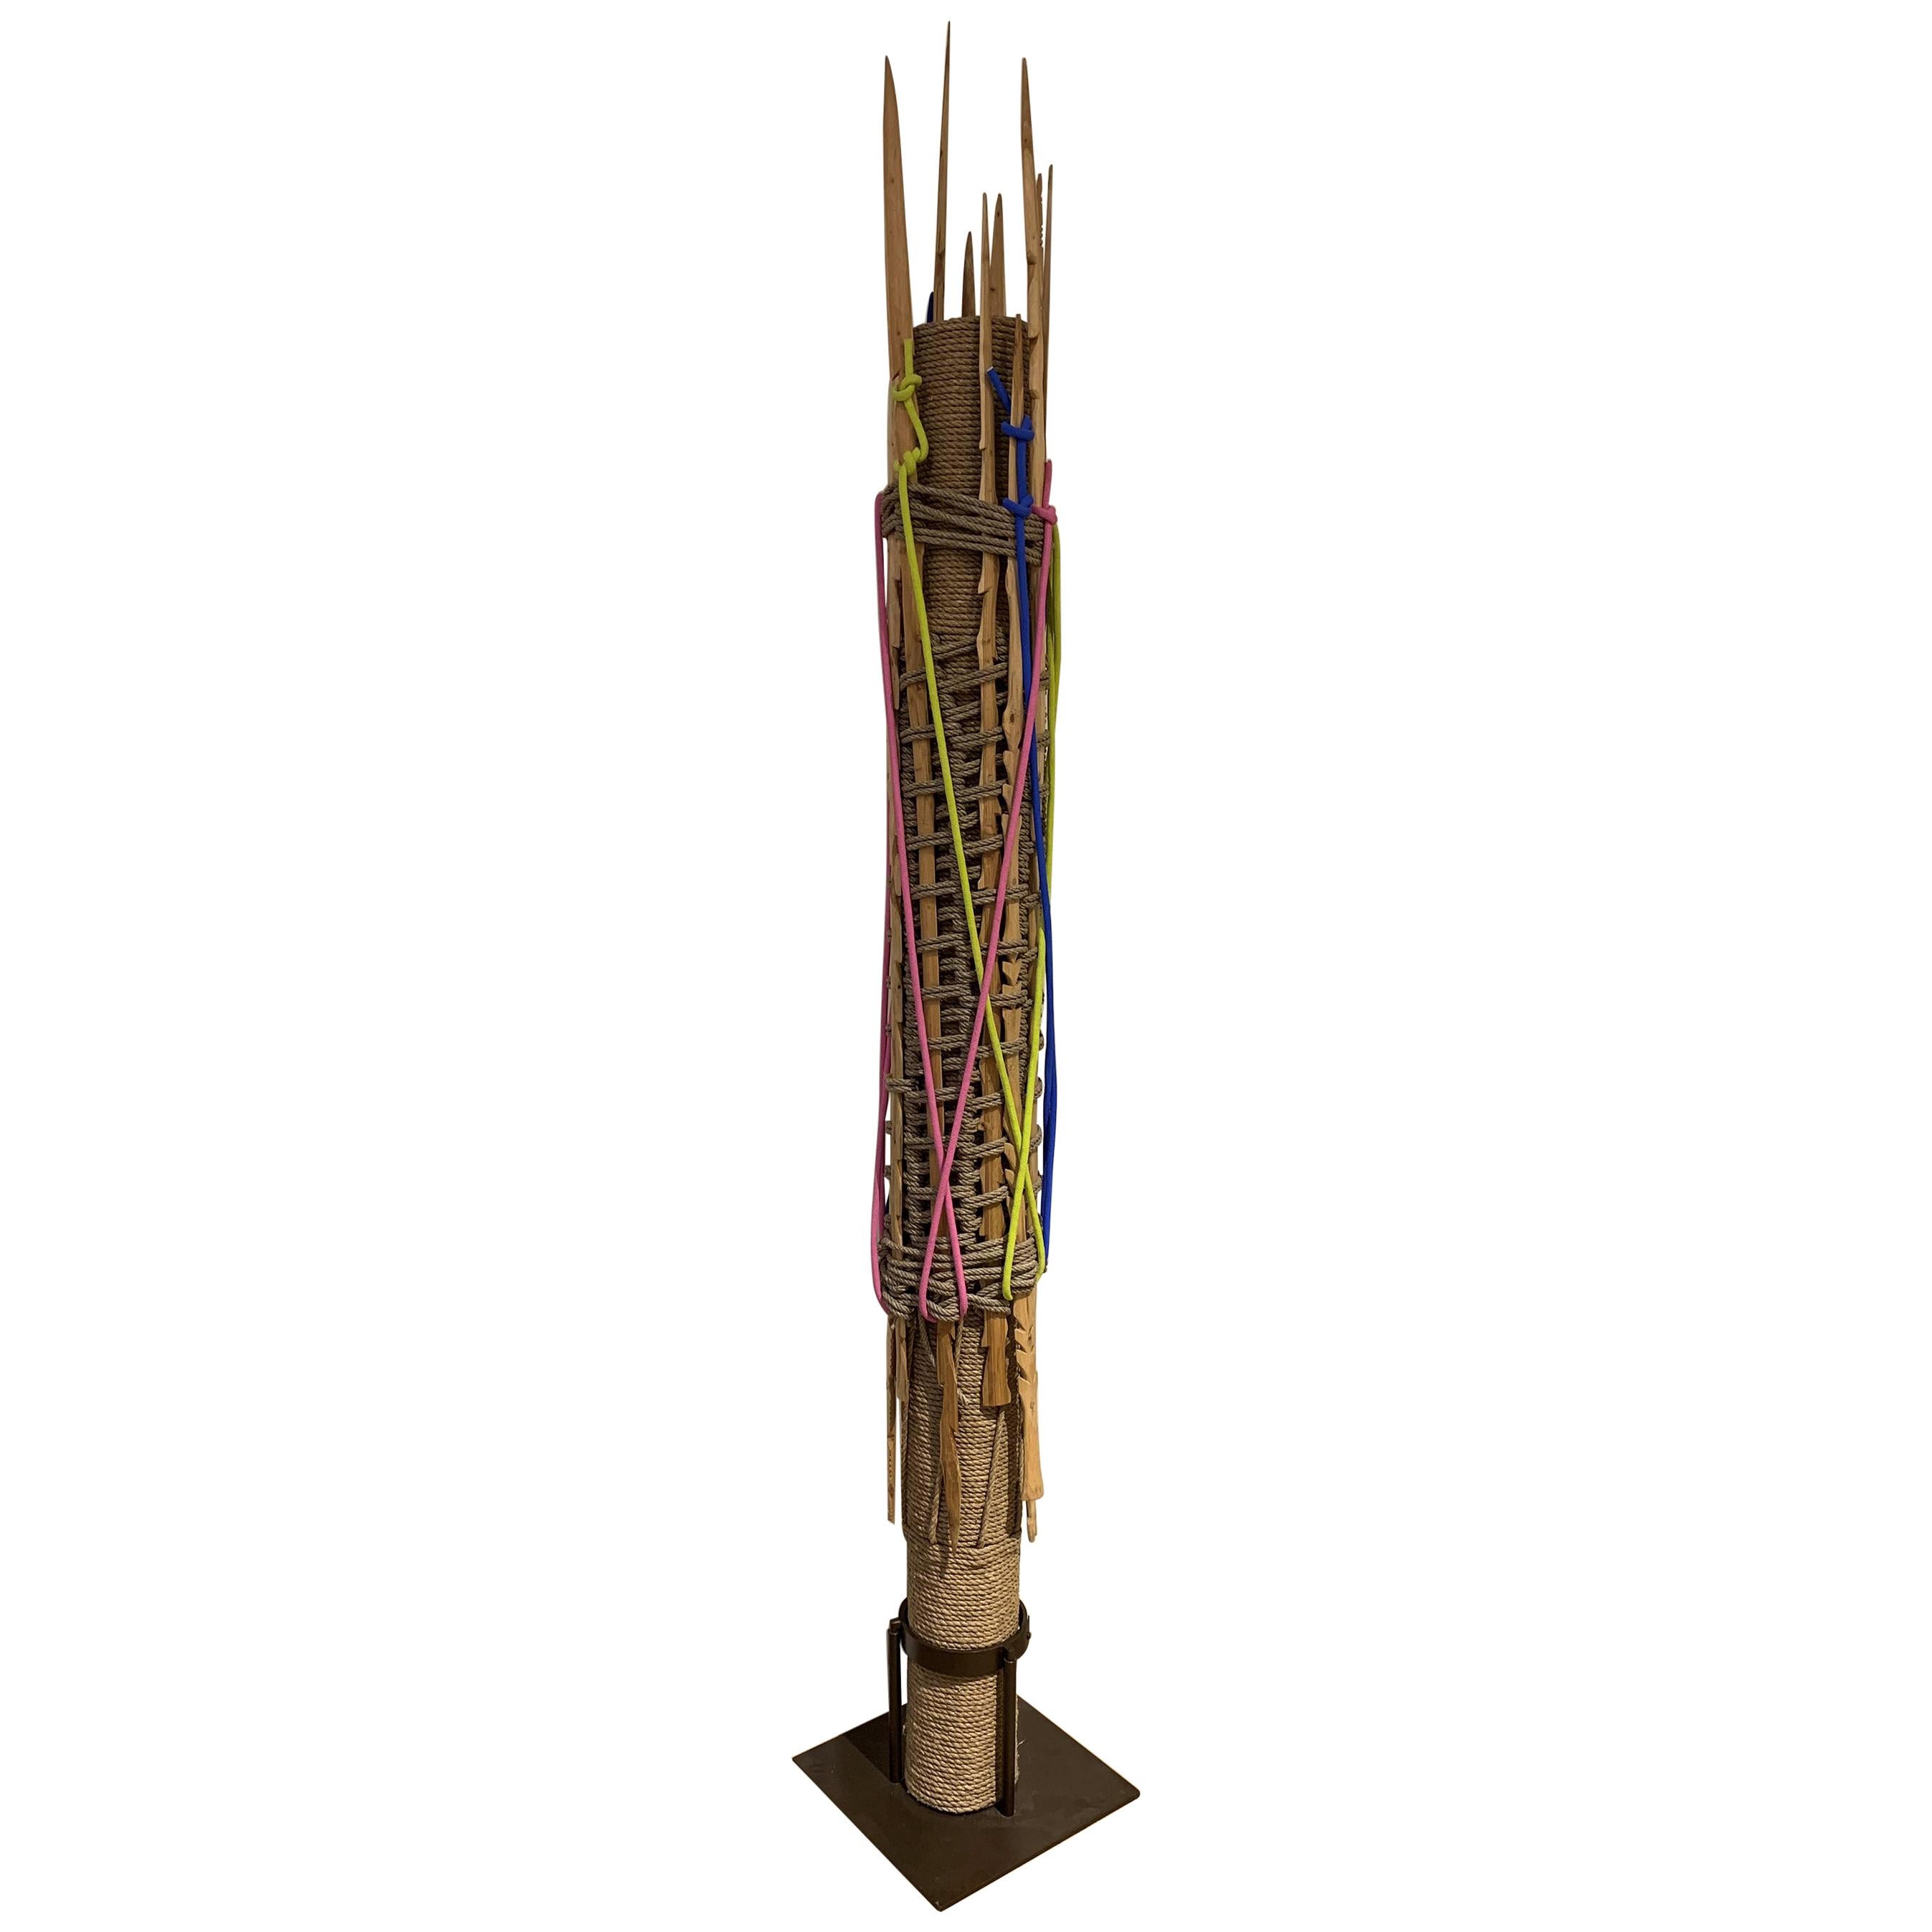 HOLLY HUNT Totem des chasseurs en Wood, coton et corde par Christian Astuguevieille